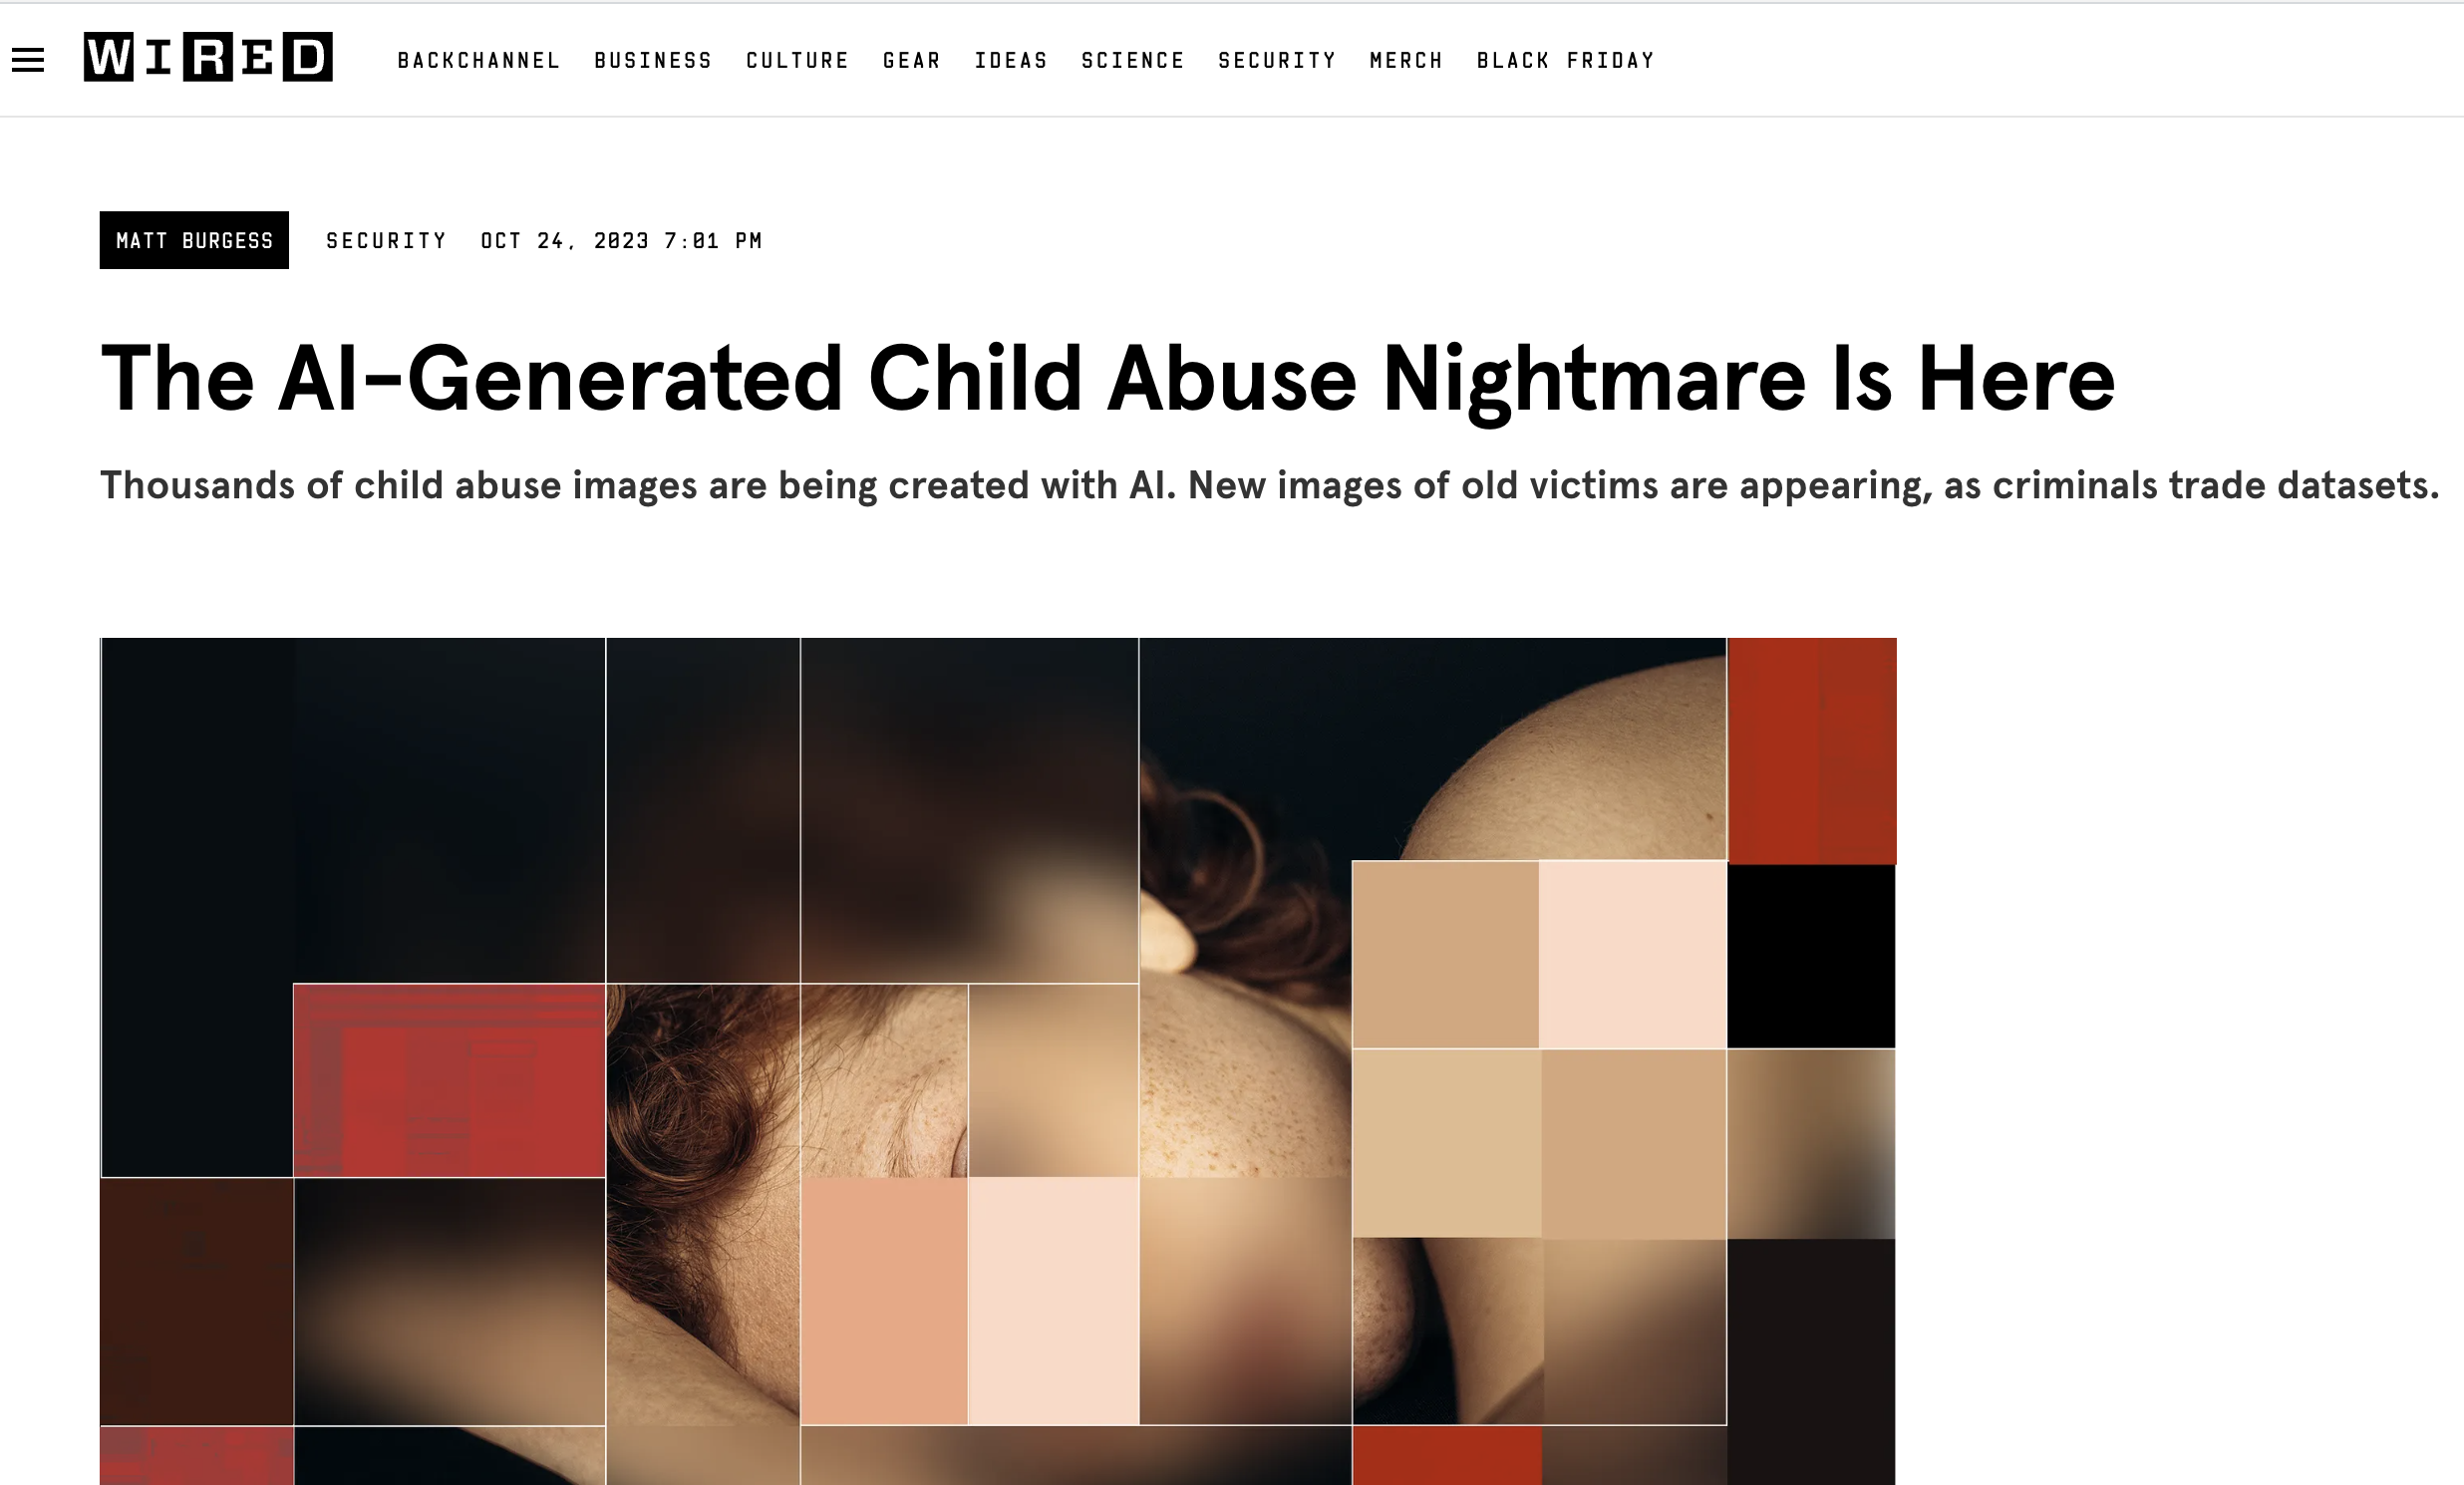 Zensiertes Bild, das die ernste und dunkle Realität von mit KI generierten Missbrauchsbildern thematisiert und die Dringlichkeit der Prävention unterstreicht.